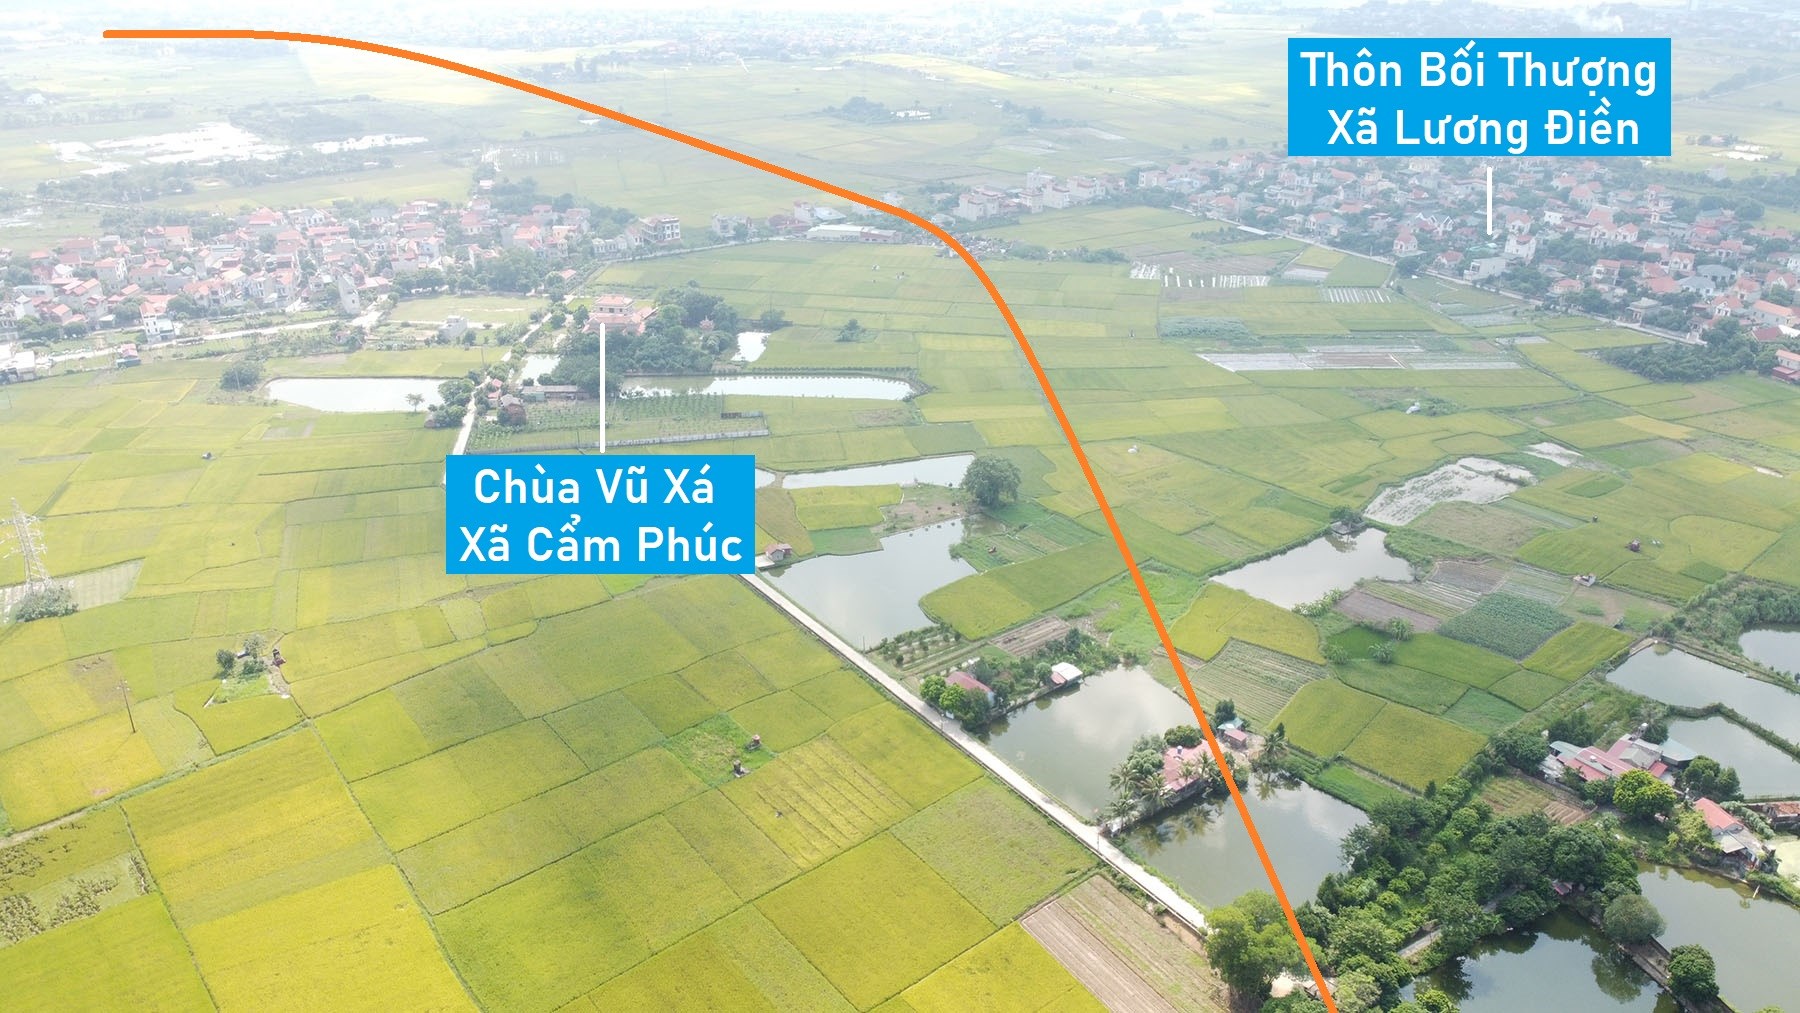 Toàn cảnh vị trí dự kiến quy hoạch cầu vượt sông Ghẽ nối QL5-DT388, Cẩm Giàng, Hải Dương